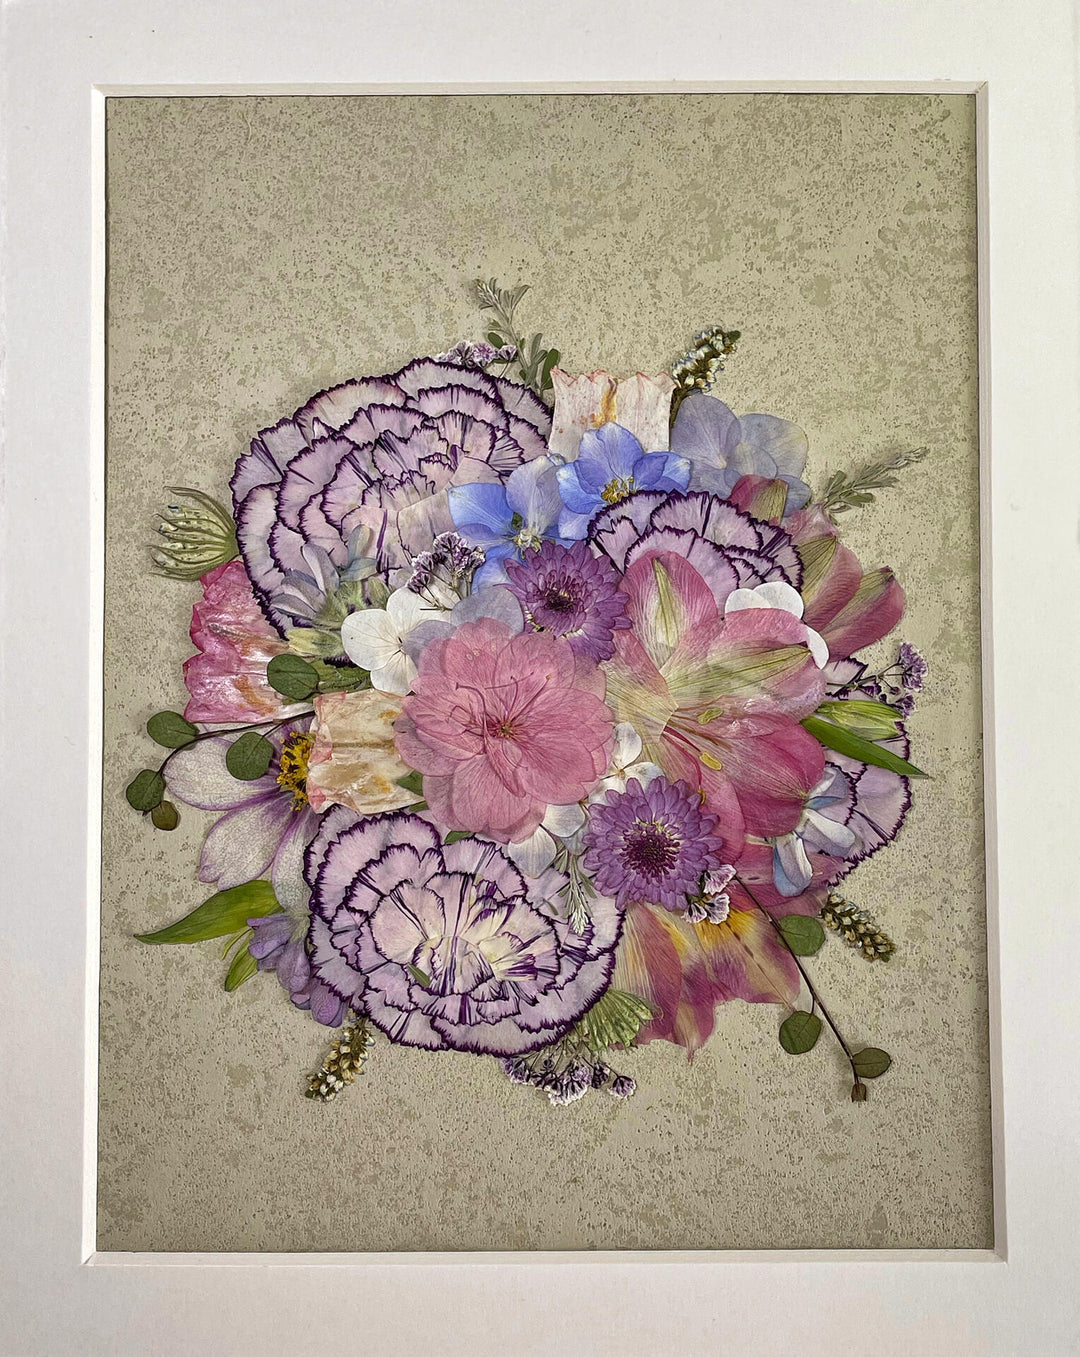 details of carnation petals formed pressed flower frame art